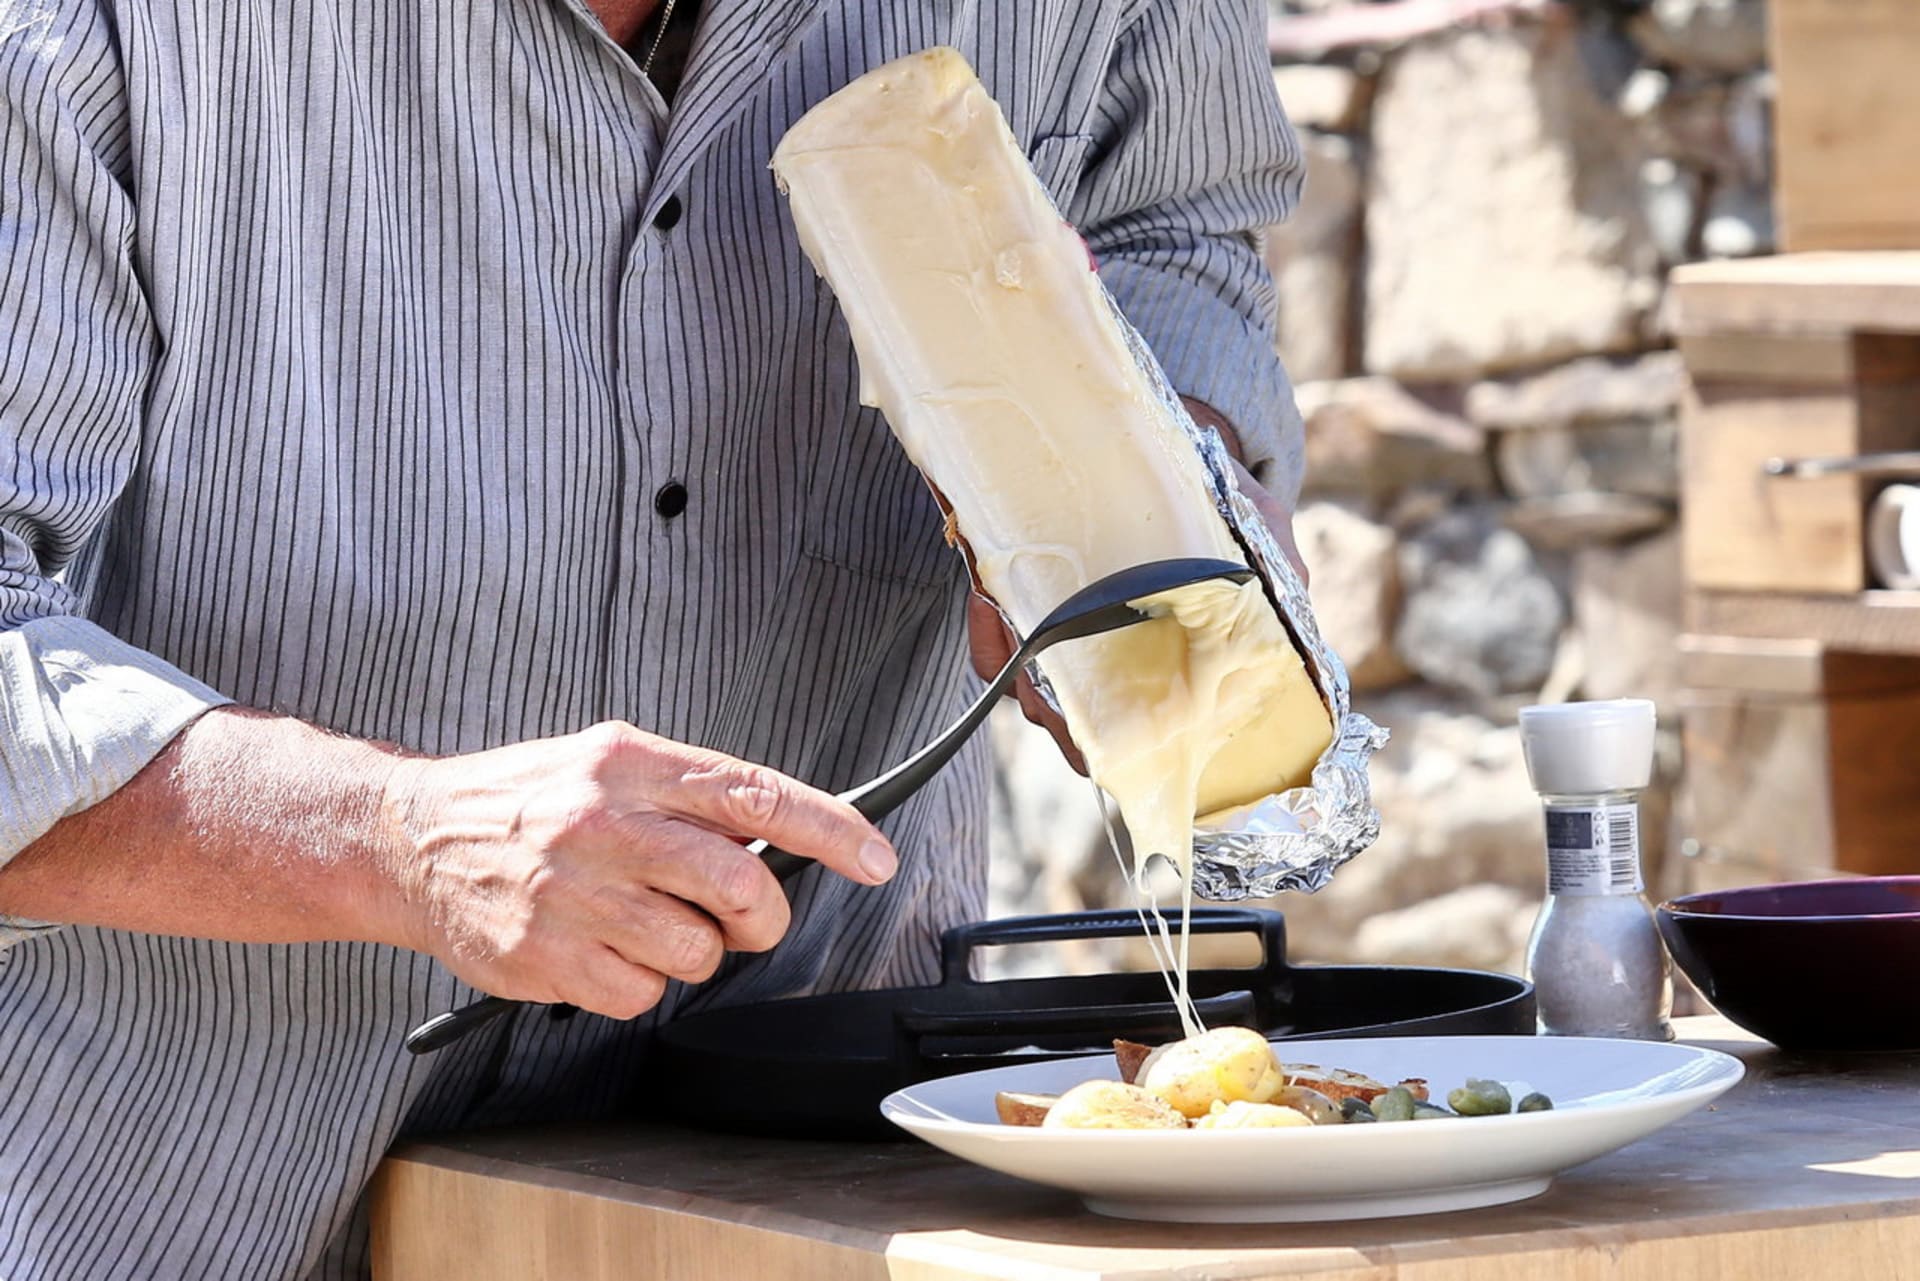 Roztavený sýr  raclette se podává na pečivu.